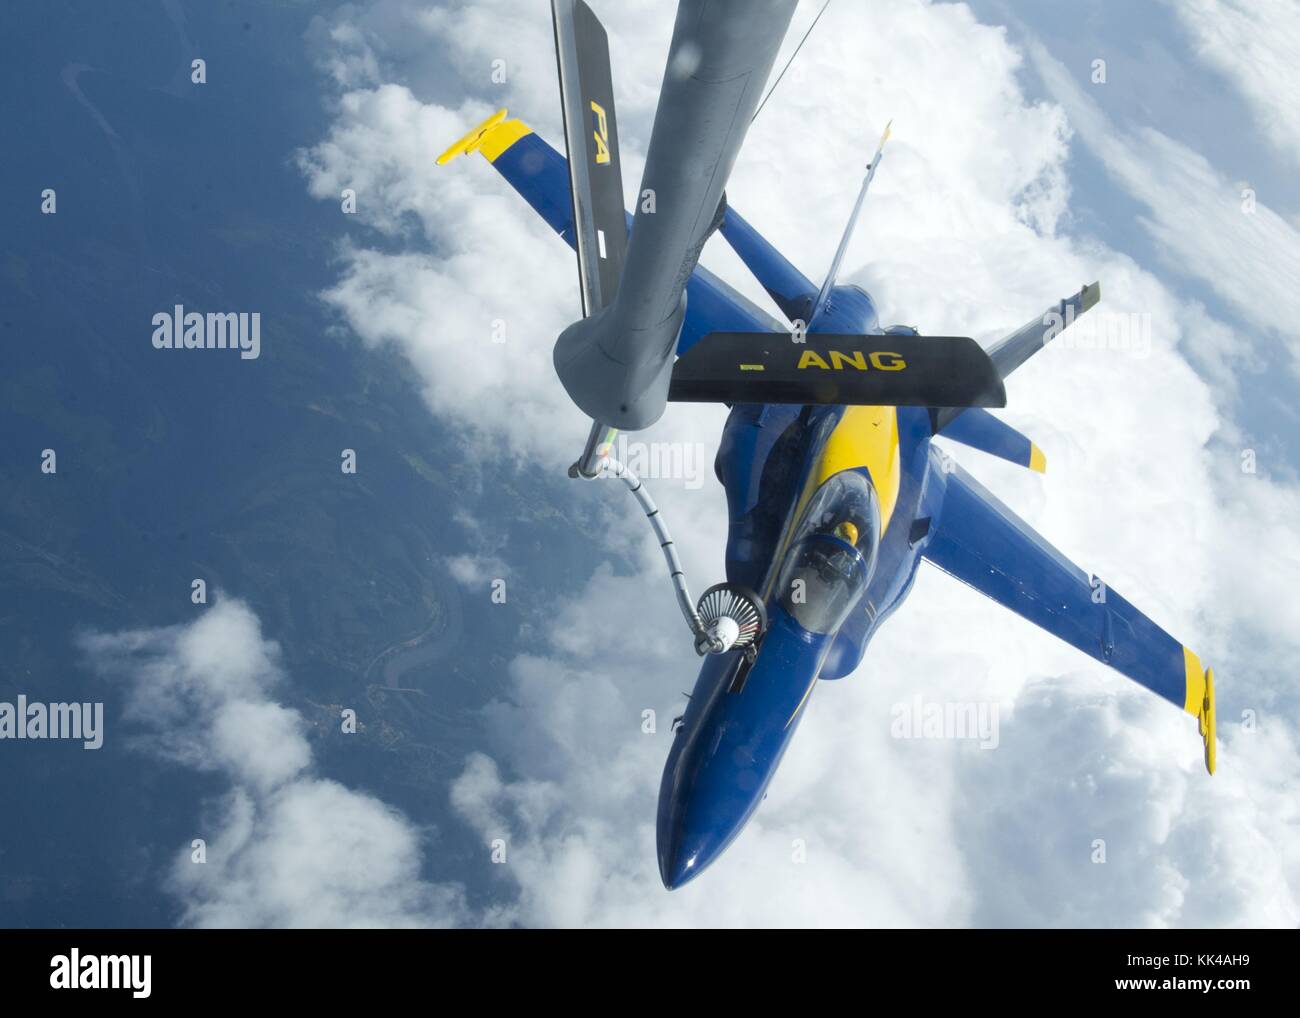 Un KC-135 de la fuerza aérea a partir de la 171ª ala de reabastecimiento aéreo de combustible F/A-18 Hornet volado por lt cj, sugarloaf, Carolina del Sur, 2012. Imagen cortesía de especialista en comunicación de masas de primera clase, Rachel mcmarr/us navy. Foto de stock